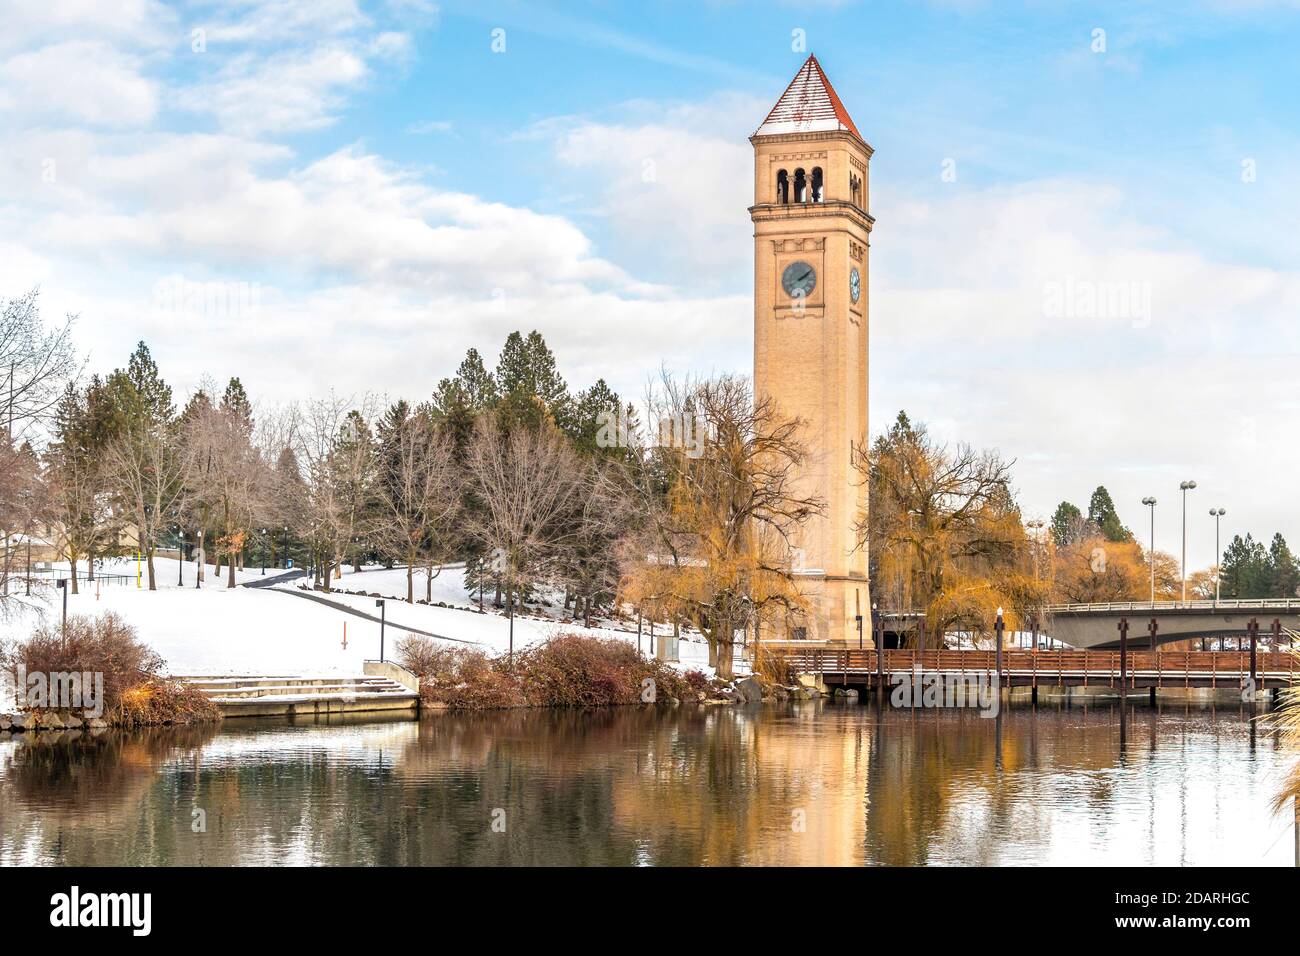 La Gran Torre del Clocktower del Norte, el pabellón de la expo, y el río Spokane en el parque Riverfront durante una Nevada de principios de otoño. Foto de stock